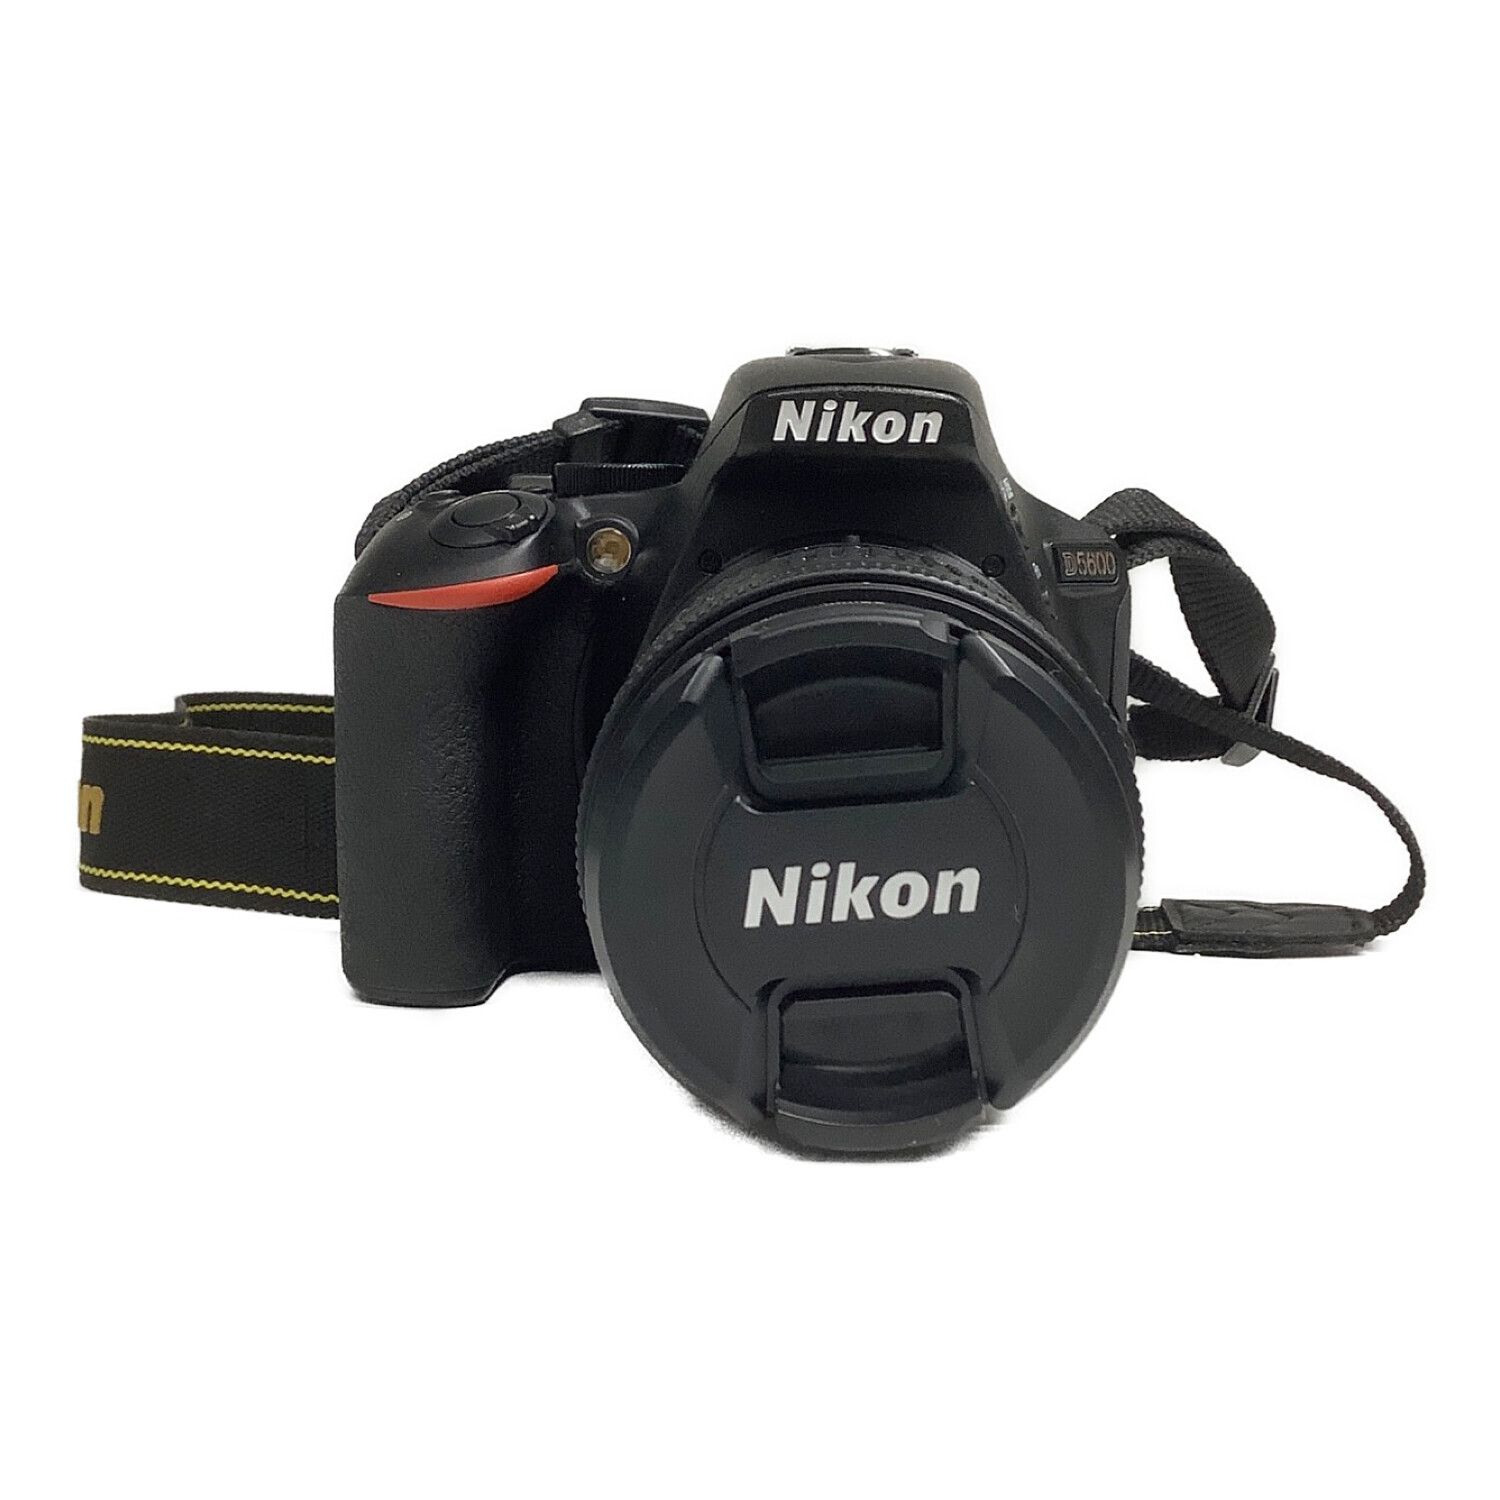 Nikon (ニコン) デジタル一眼レフカメラ D5600 ダブルズームキット